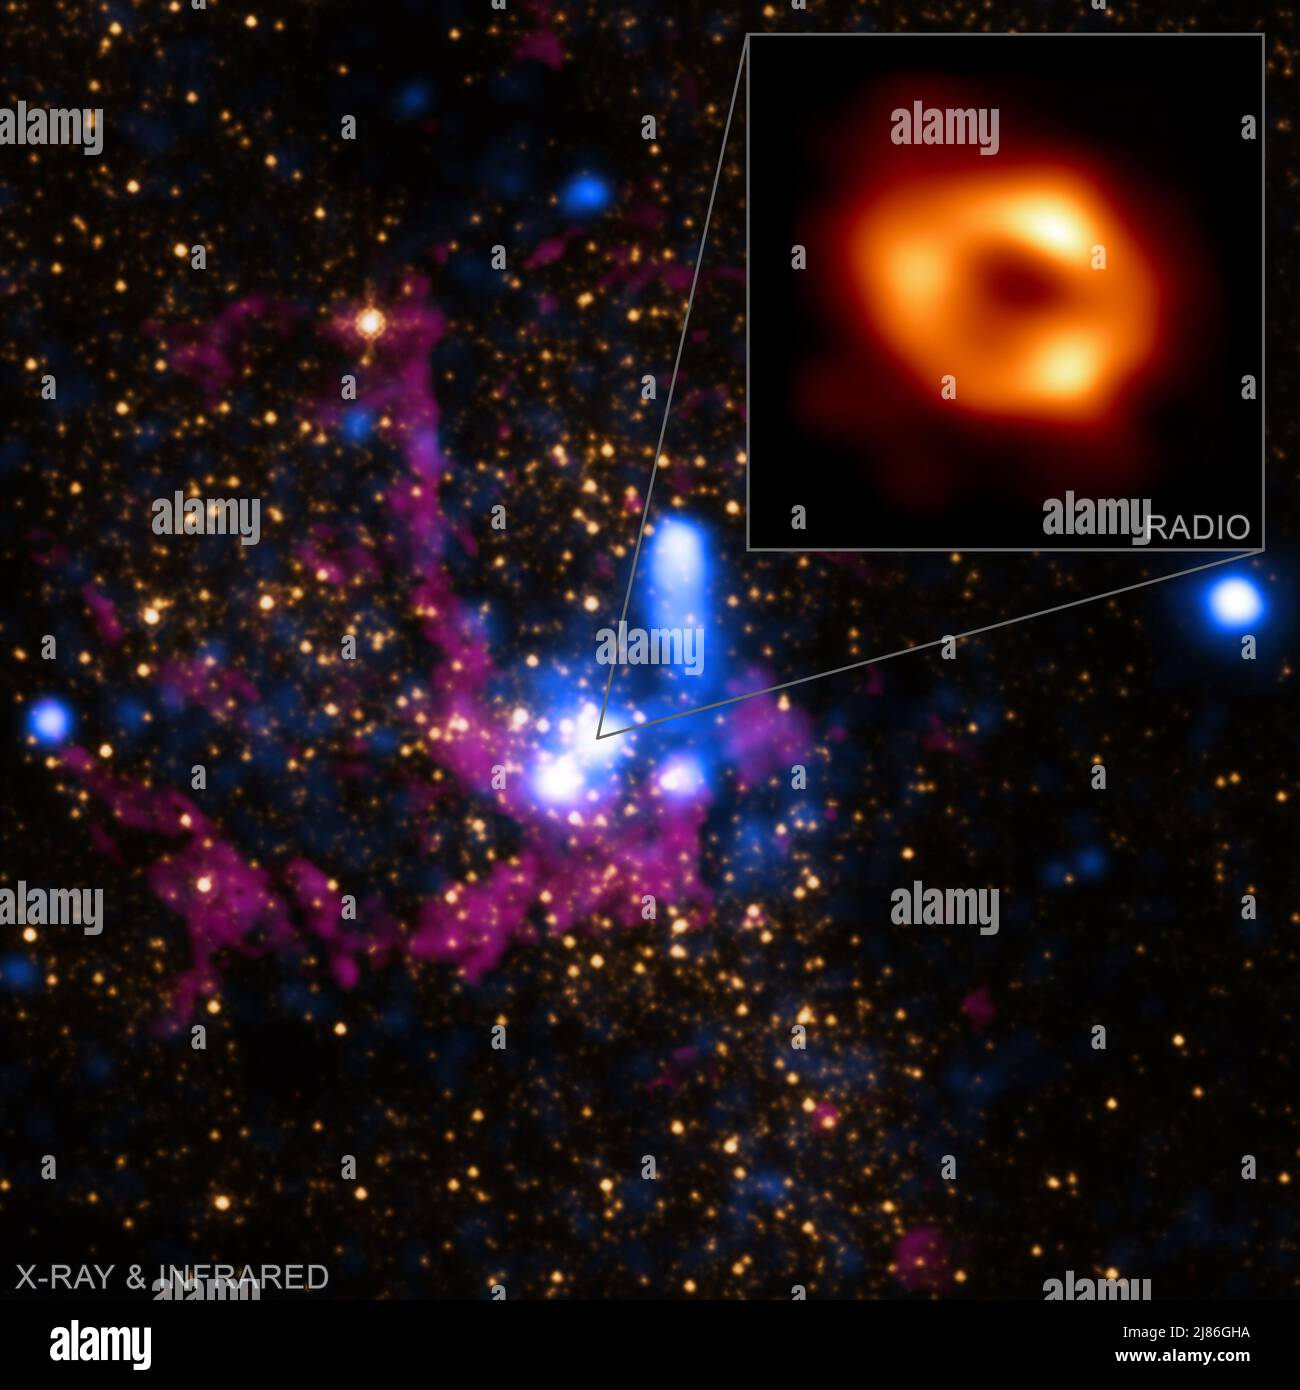 Das Hauptfeld dieser Grafik enthält Röntgendaten von Chandra (blau), die heißes Gas darstellen, das von massiven Sternen in der Nähe des Schwarzen Lochs weggeblasen wurde. Zwei Aufnahmen von Infrarotlicht mit unterschiedlichen Wellenlängen vom NASA-Weltraumteleskop Hubble zeigen Sterne (orange) und kühles Gas (violett). Diese Bilder sind sieben Lichtjahre lang in der Entfernung von Sgr A*. Ein Auszug zeigt das neue EHT-Bild, das nur etwa 1,8 x 10-5 Lichtjahre (0,000018 Lichtjahre oder etwa 10 Lichtminuten) aufweist. (Bild: Röntgen: NASA/CXC/SAO; IR: NASA/HST/STScI. Infset: Radio (EHT Collaboration)) (NASA via Sipa USA) ***Press Stockfoto